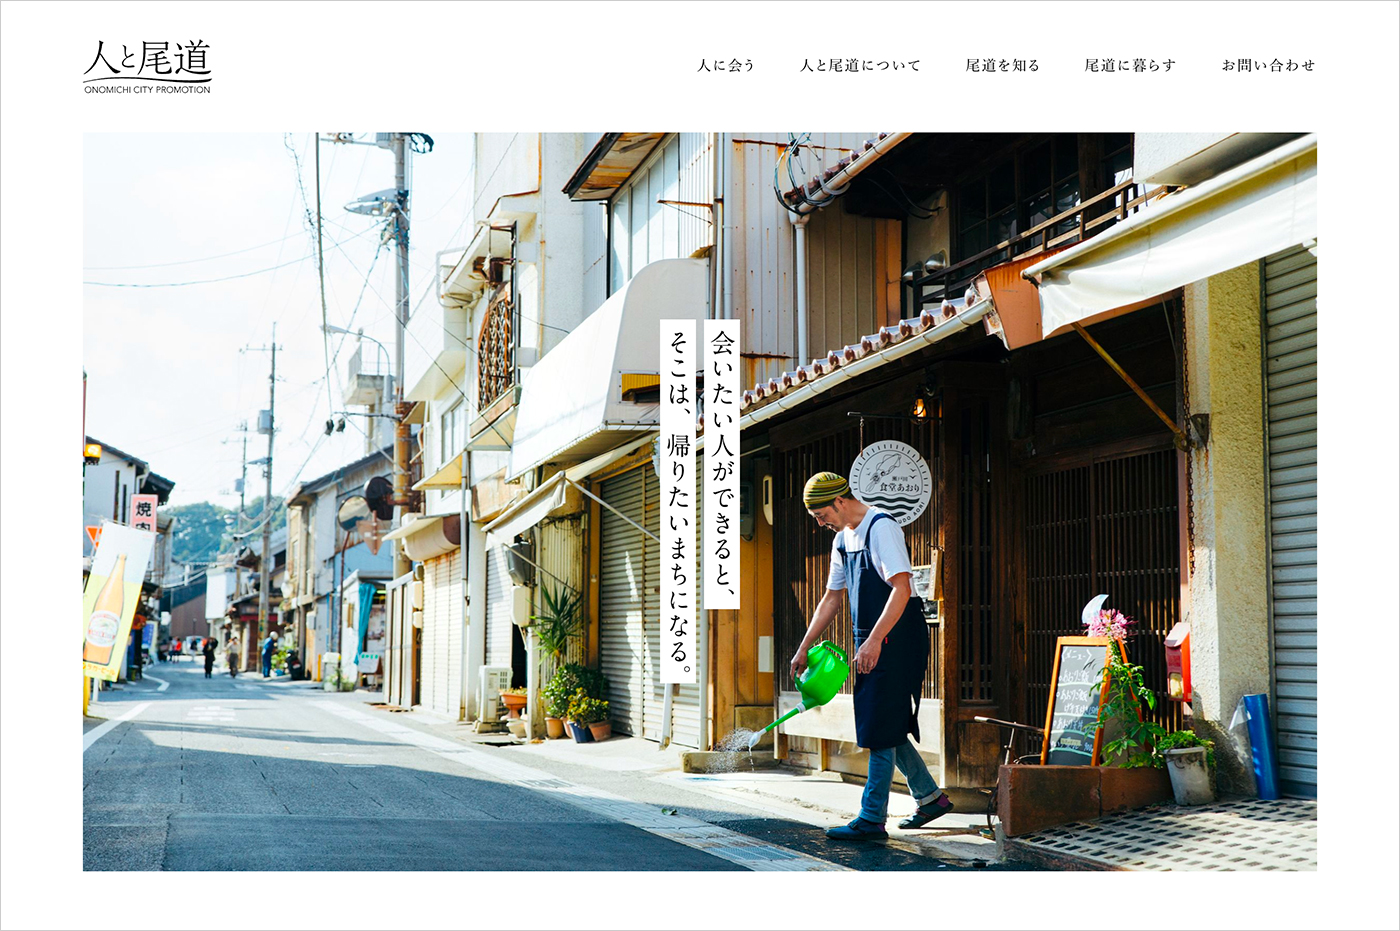 人と尾道 | 広島県尾道市シティプロモーションウェブサイトの画面キャプチャ画像